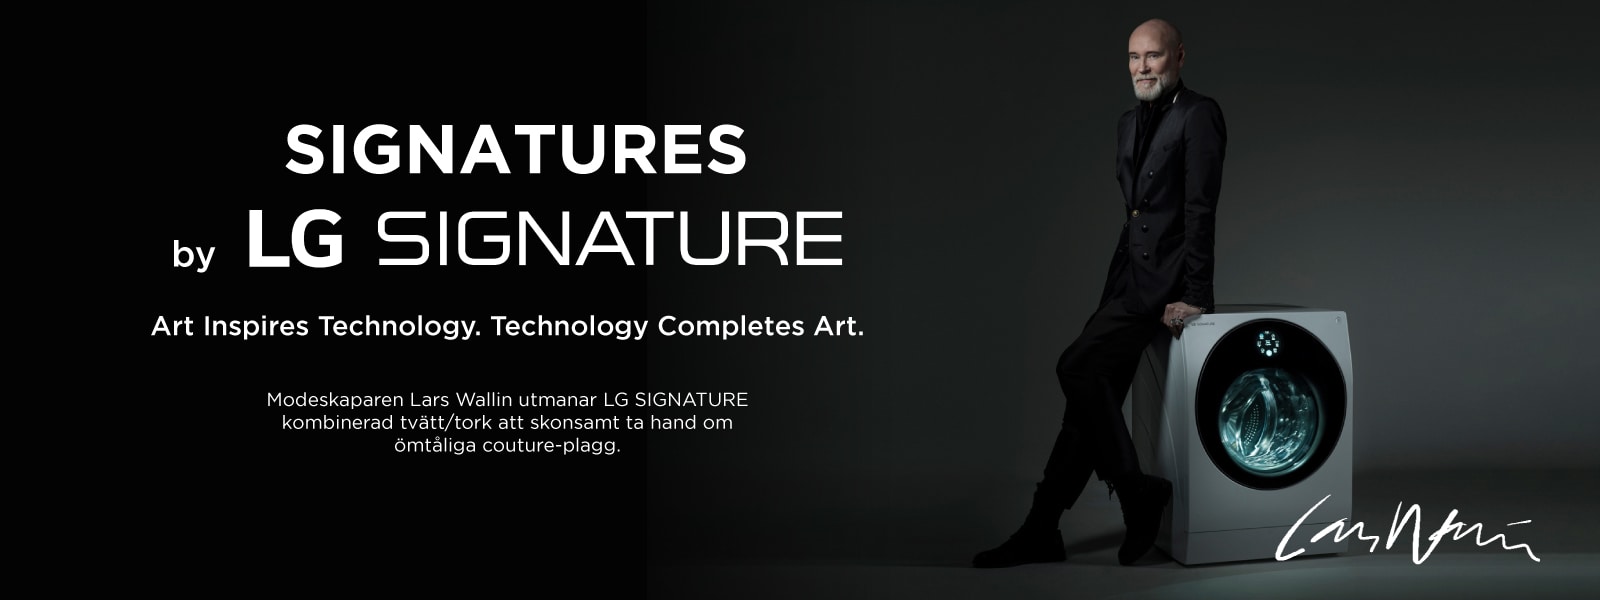 Signatures by LG SIGNATURE